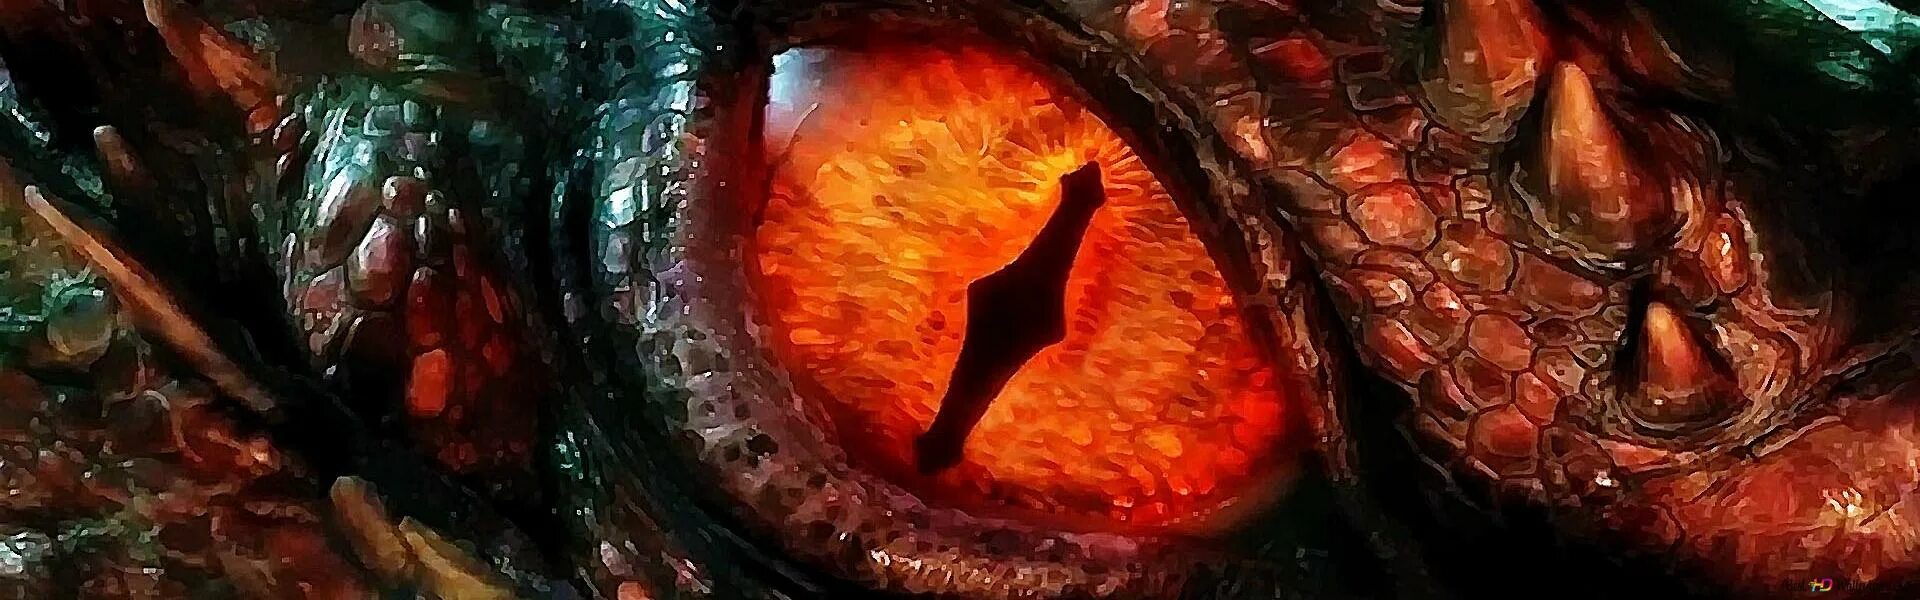 Dragon eye перевод. Глаза дракона вельдоры. Огромный глаз дракона. Глаз Смауга. Глаза для драконов.